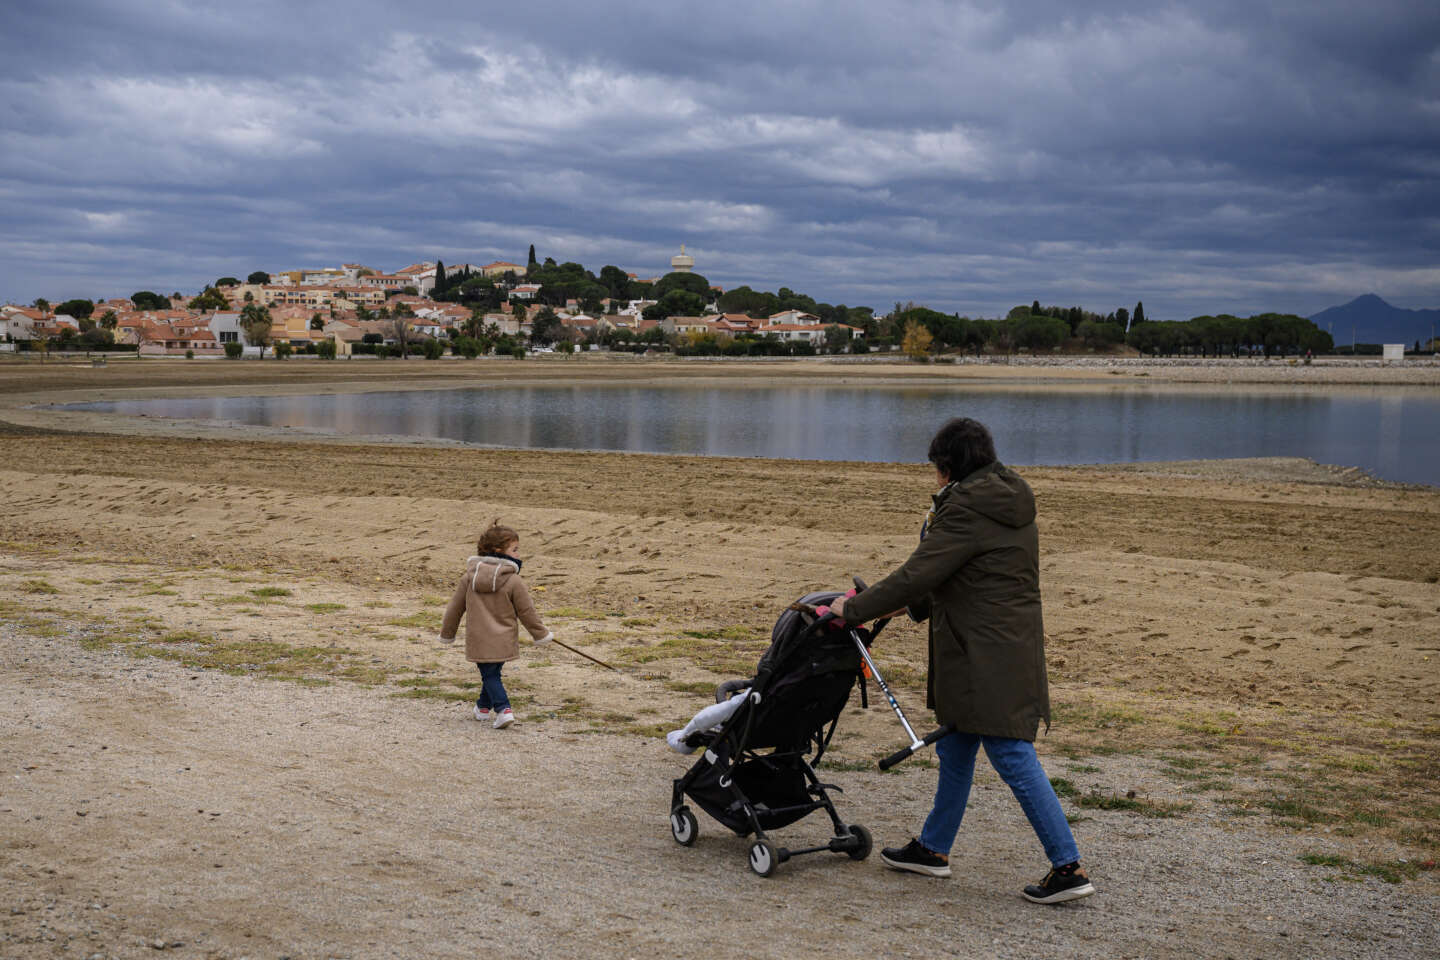 En pleine sécheresse dans les Pyrénées-Orientales, un projet de golf « exemplaire » provoque une mobilisation